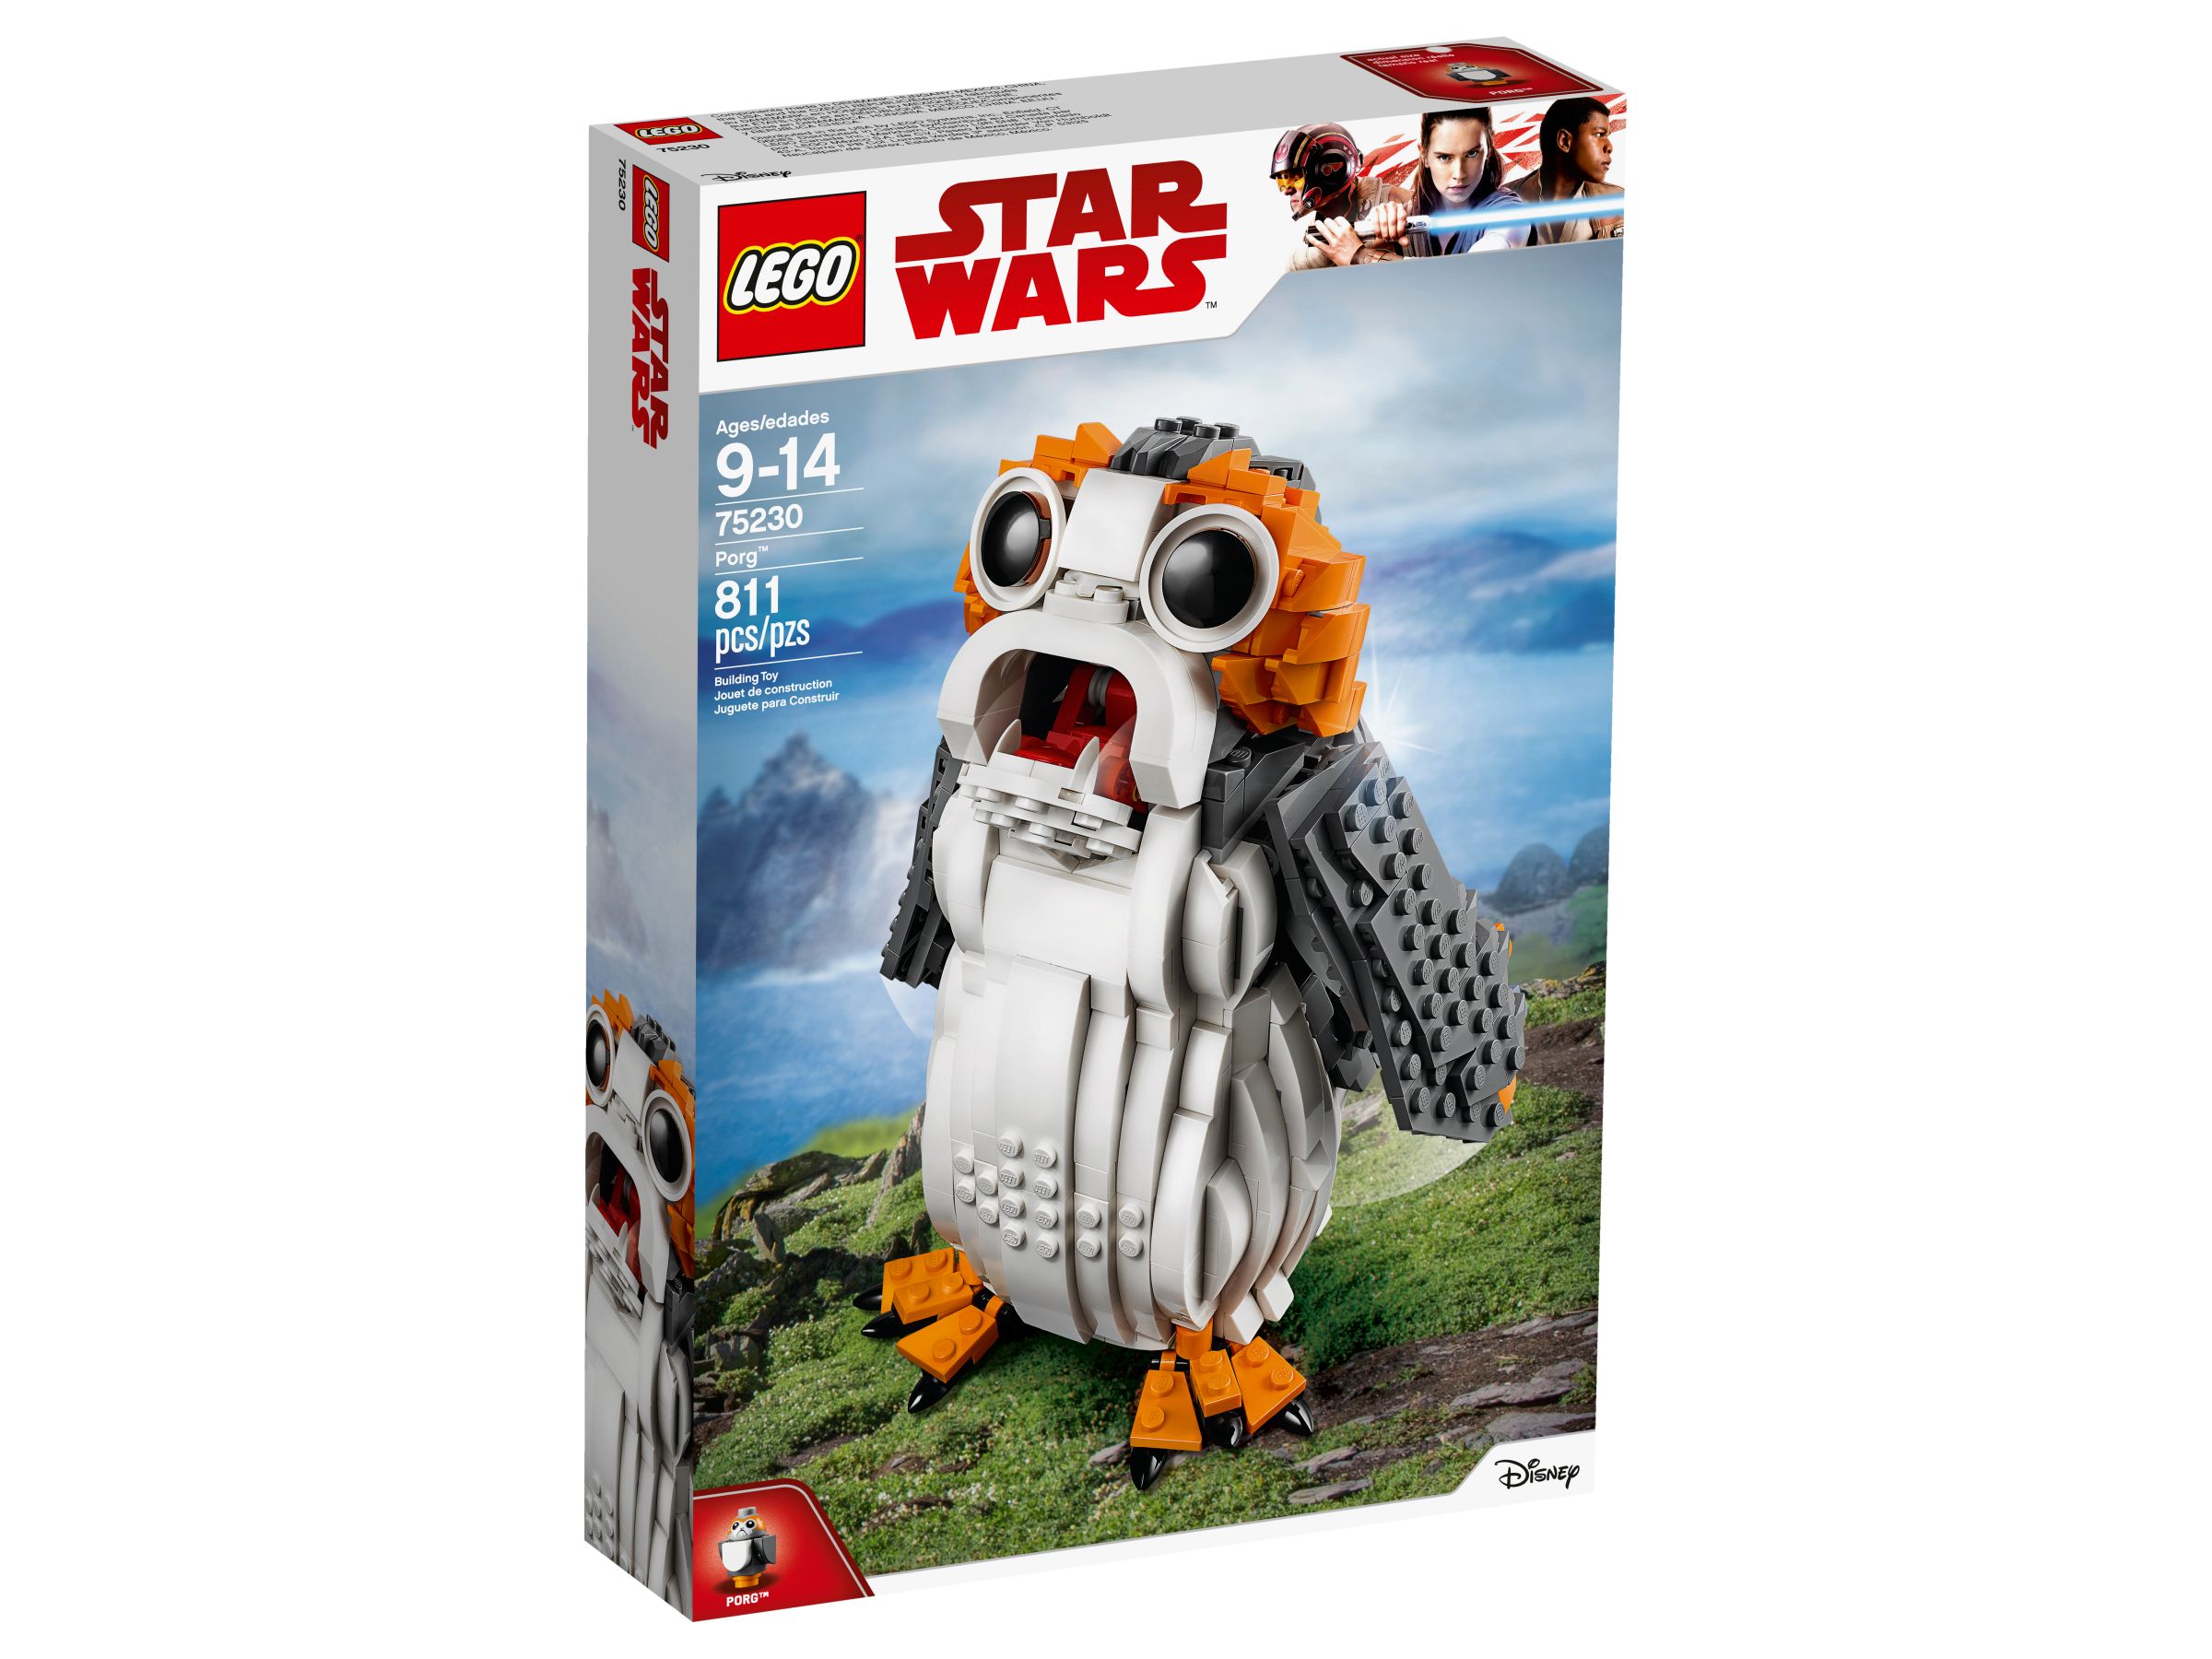 LEGO Star Wars 75230 Porg™ LEGO_75230_alt1.jpg